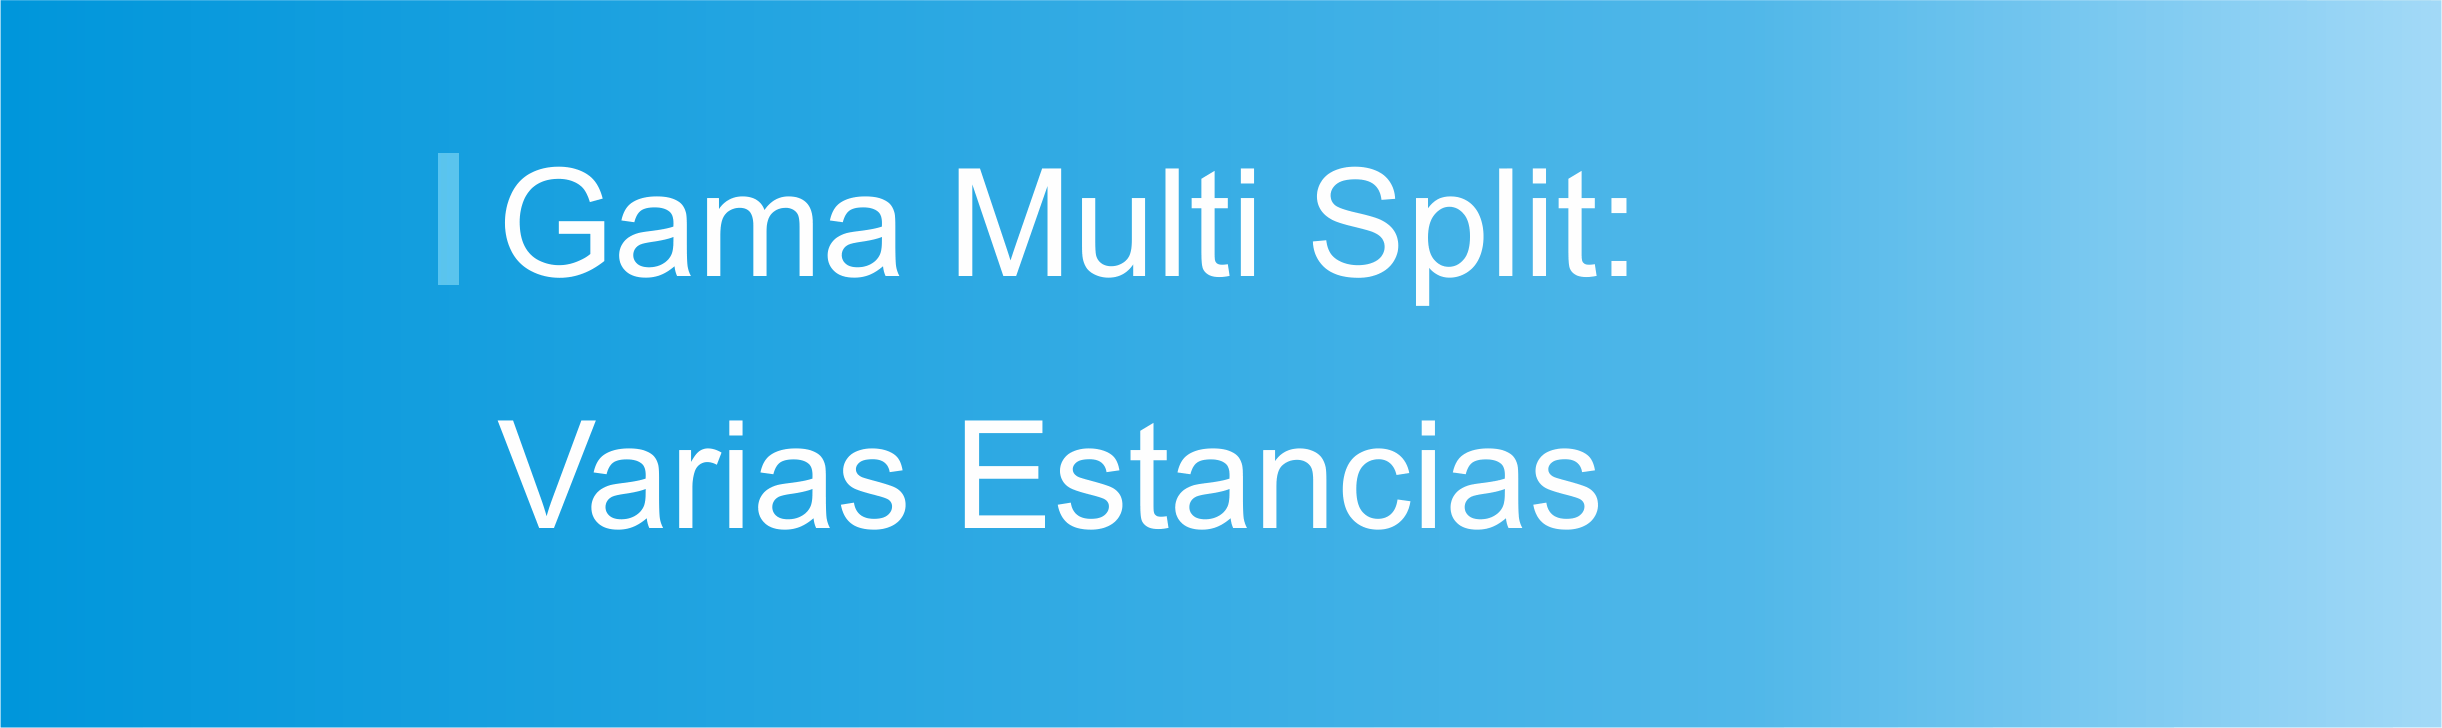 Gama Multi Split - Varias Estancias